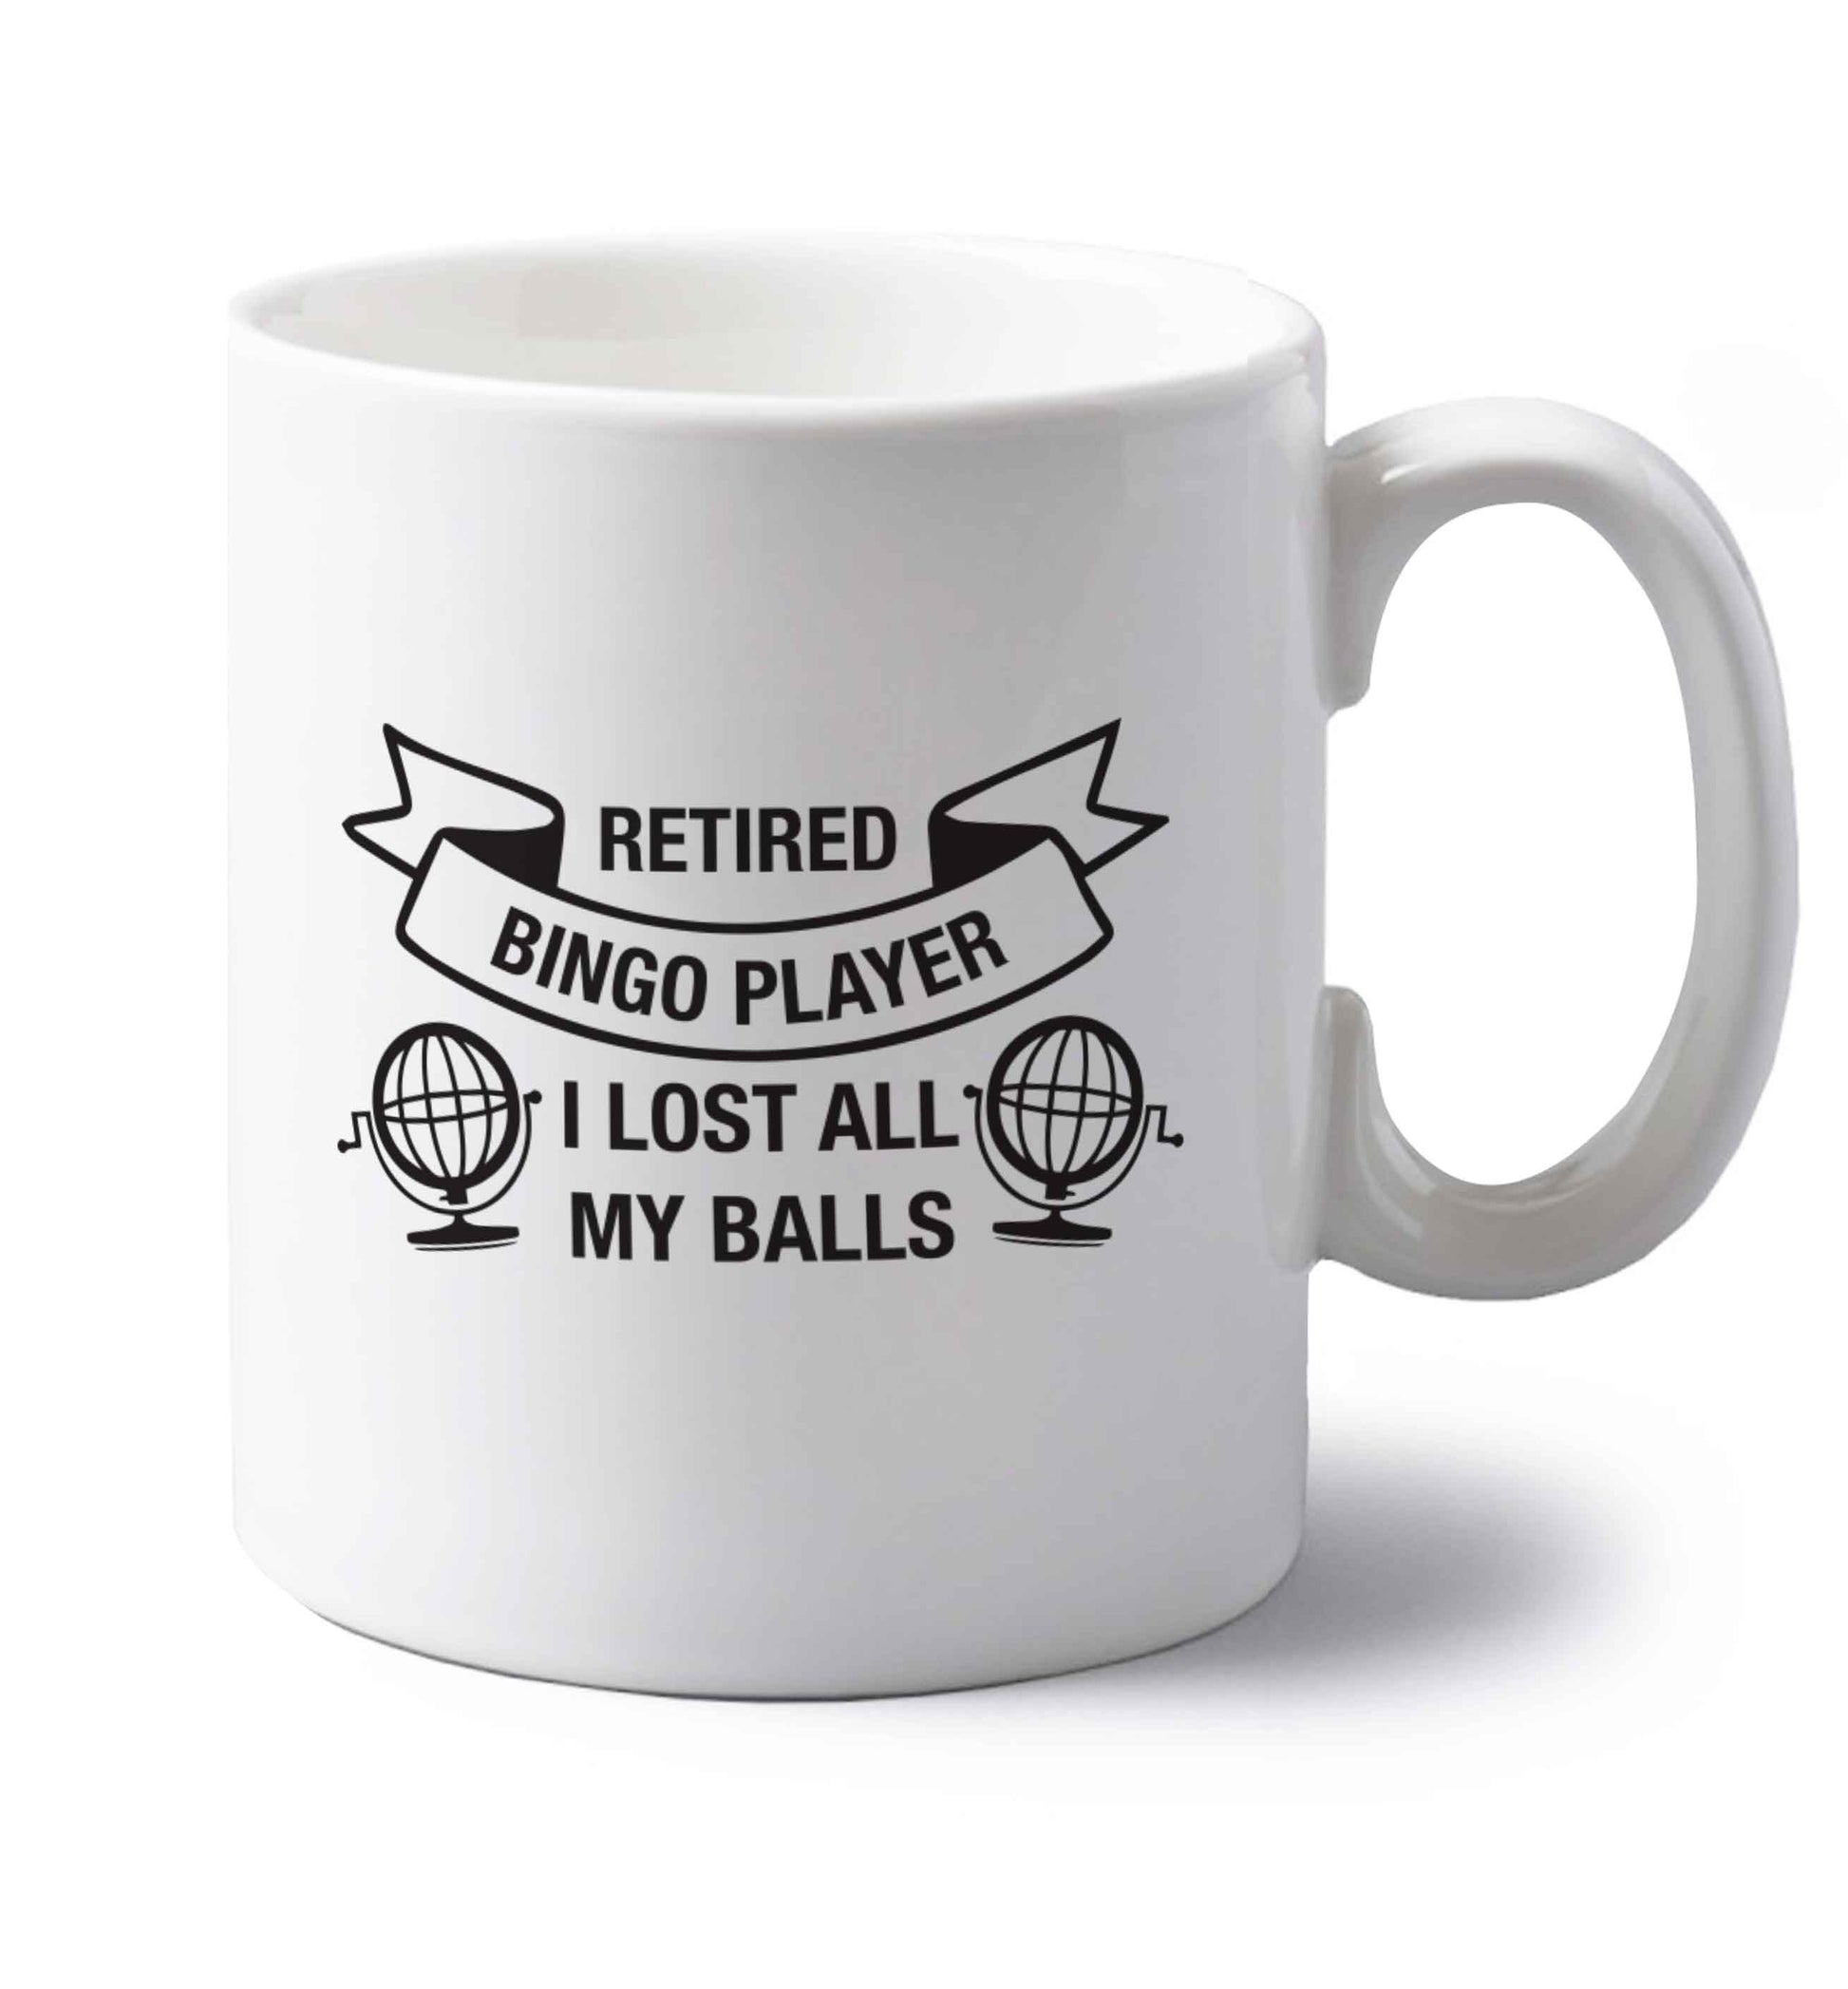 Retired bingo player I lost all my balls left handed white ceramic mug 